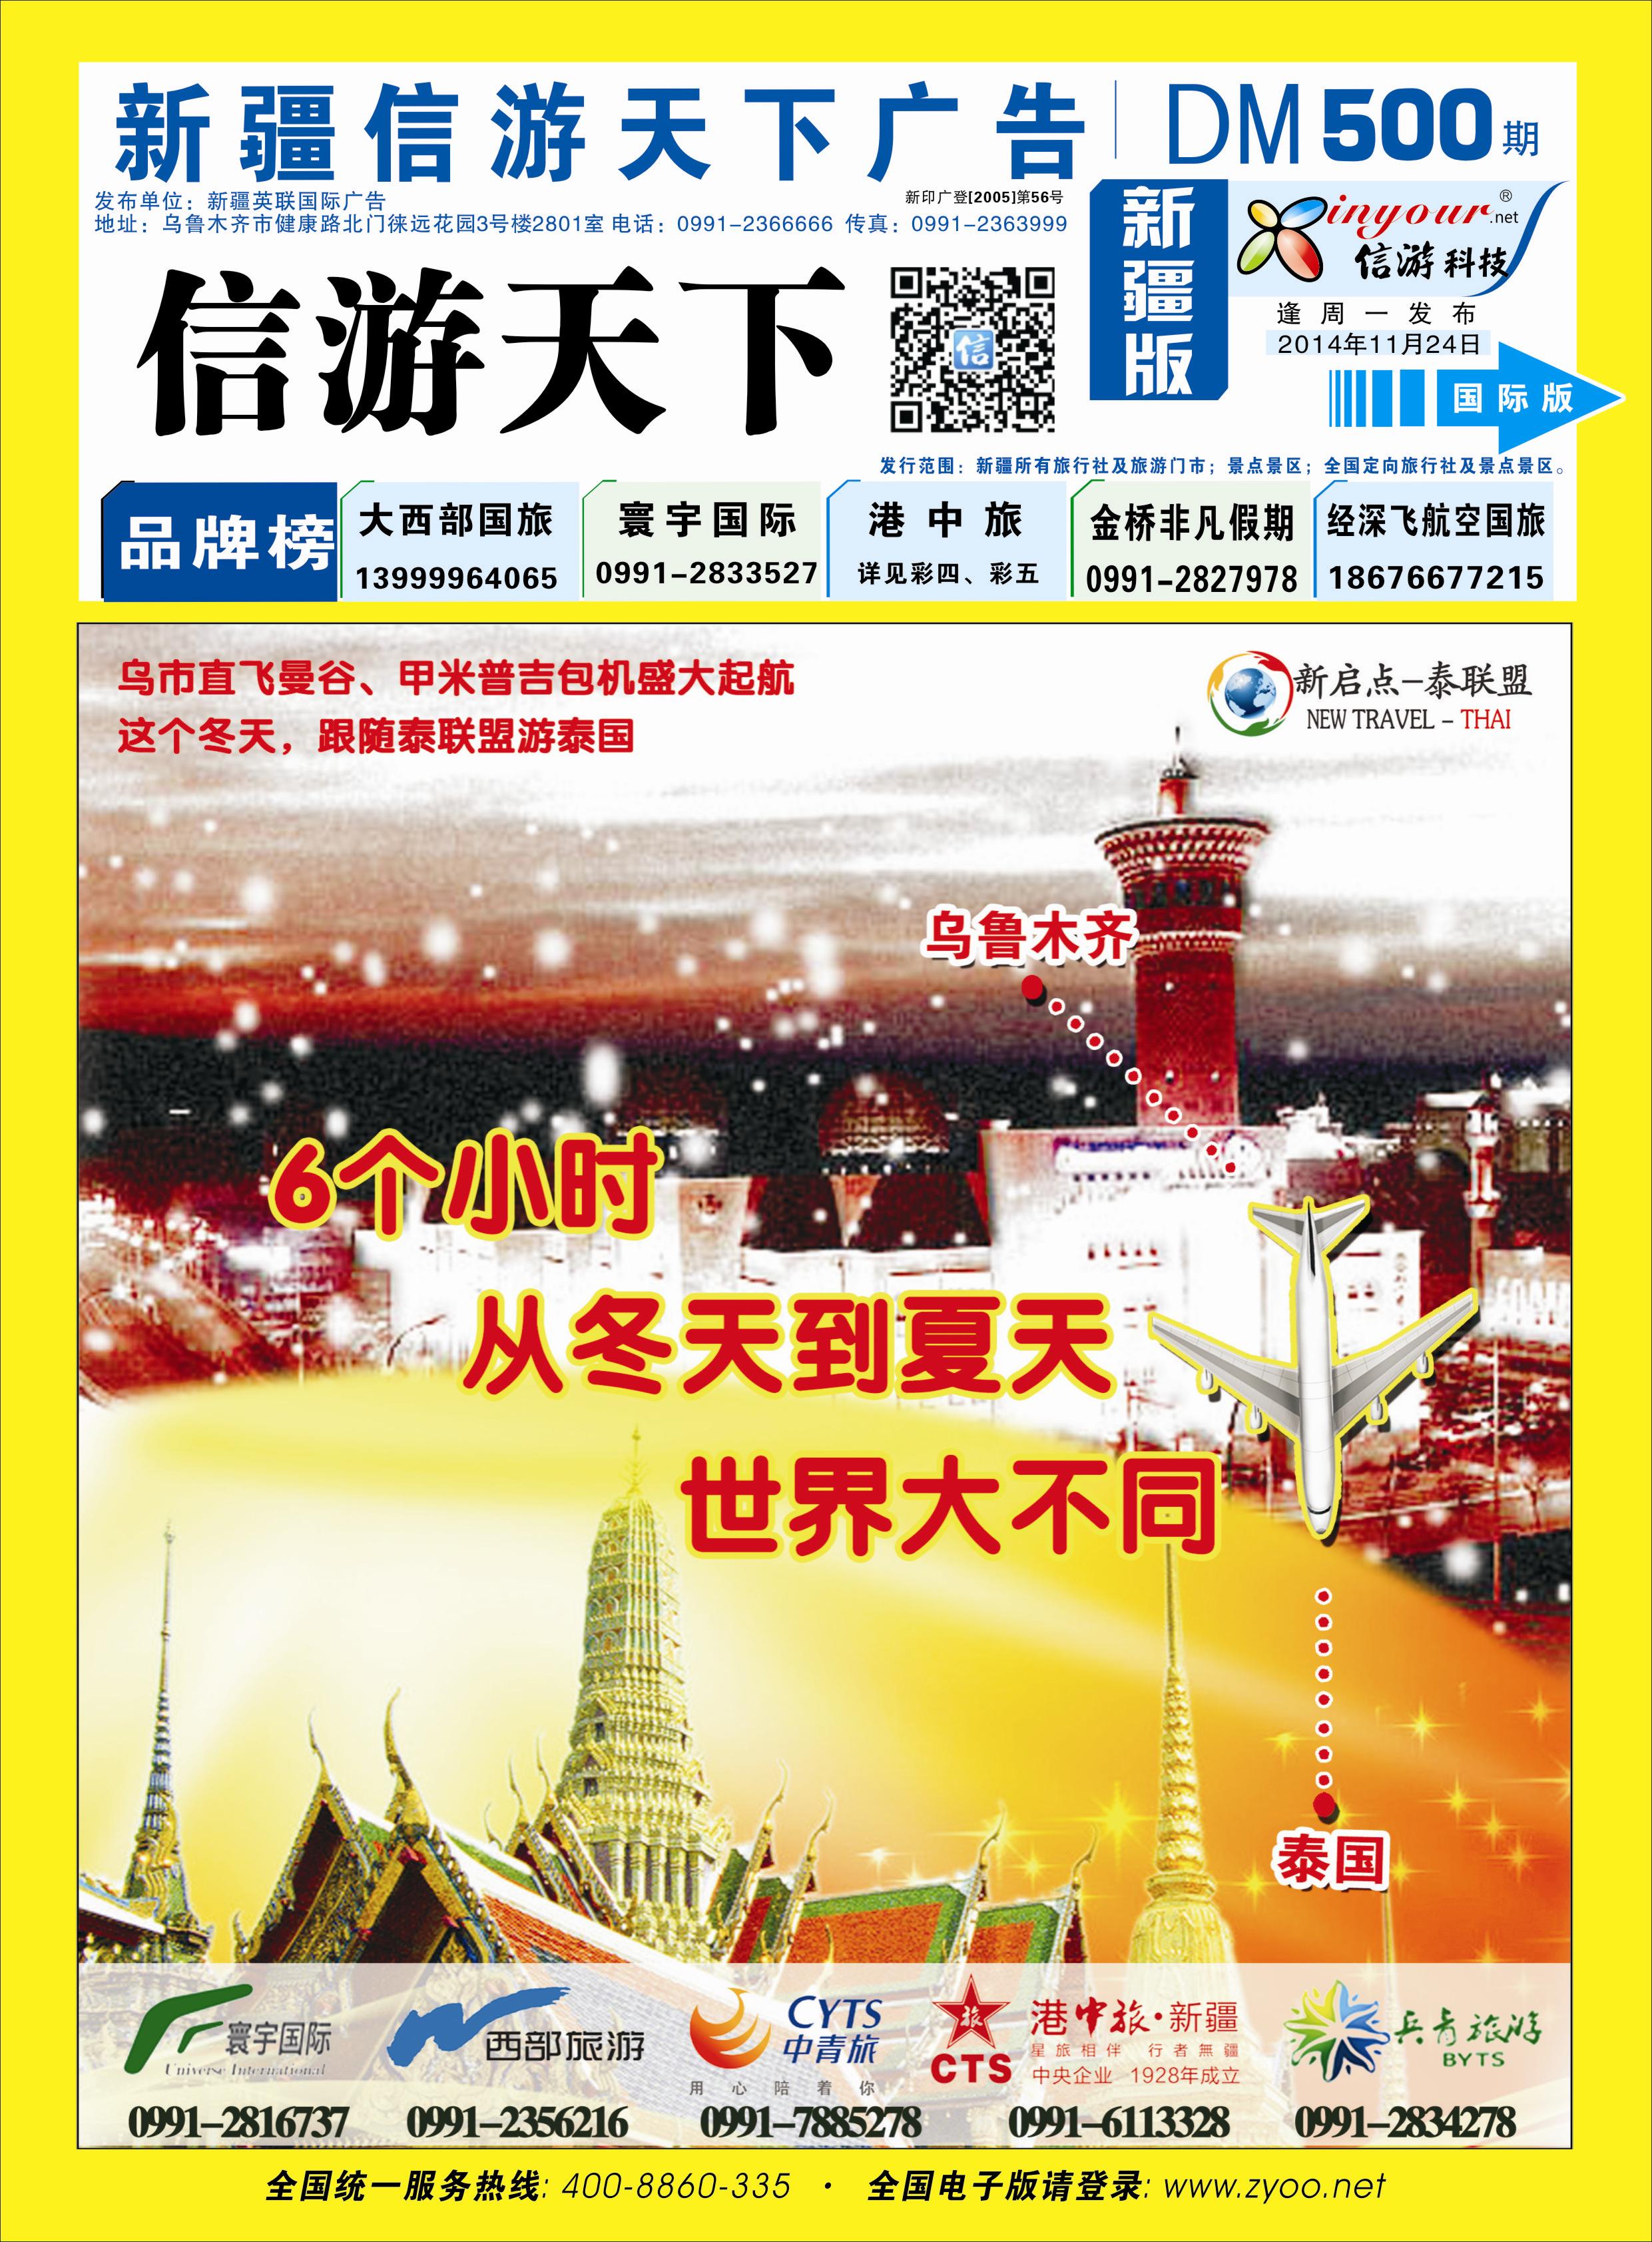 港中旅国际新疆旅行社有限责任公司蓝版封面